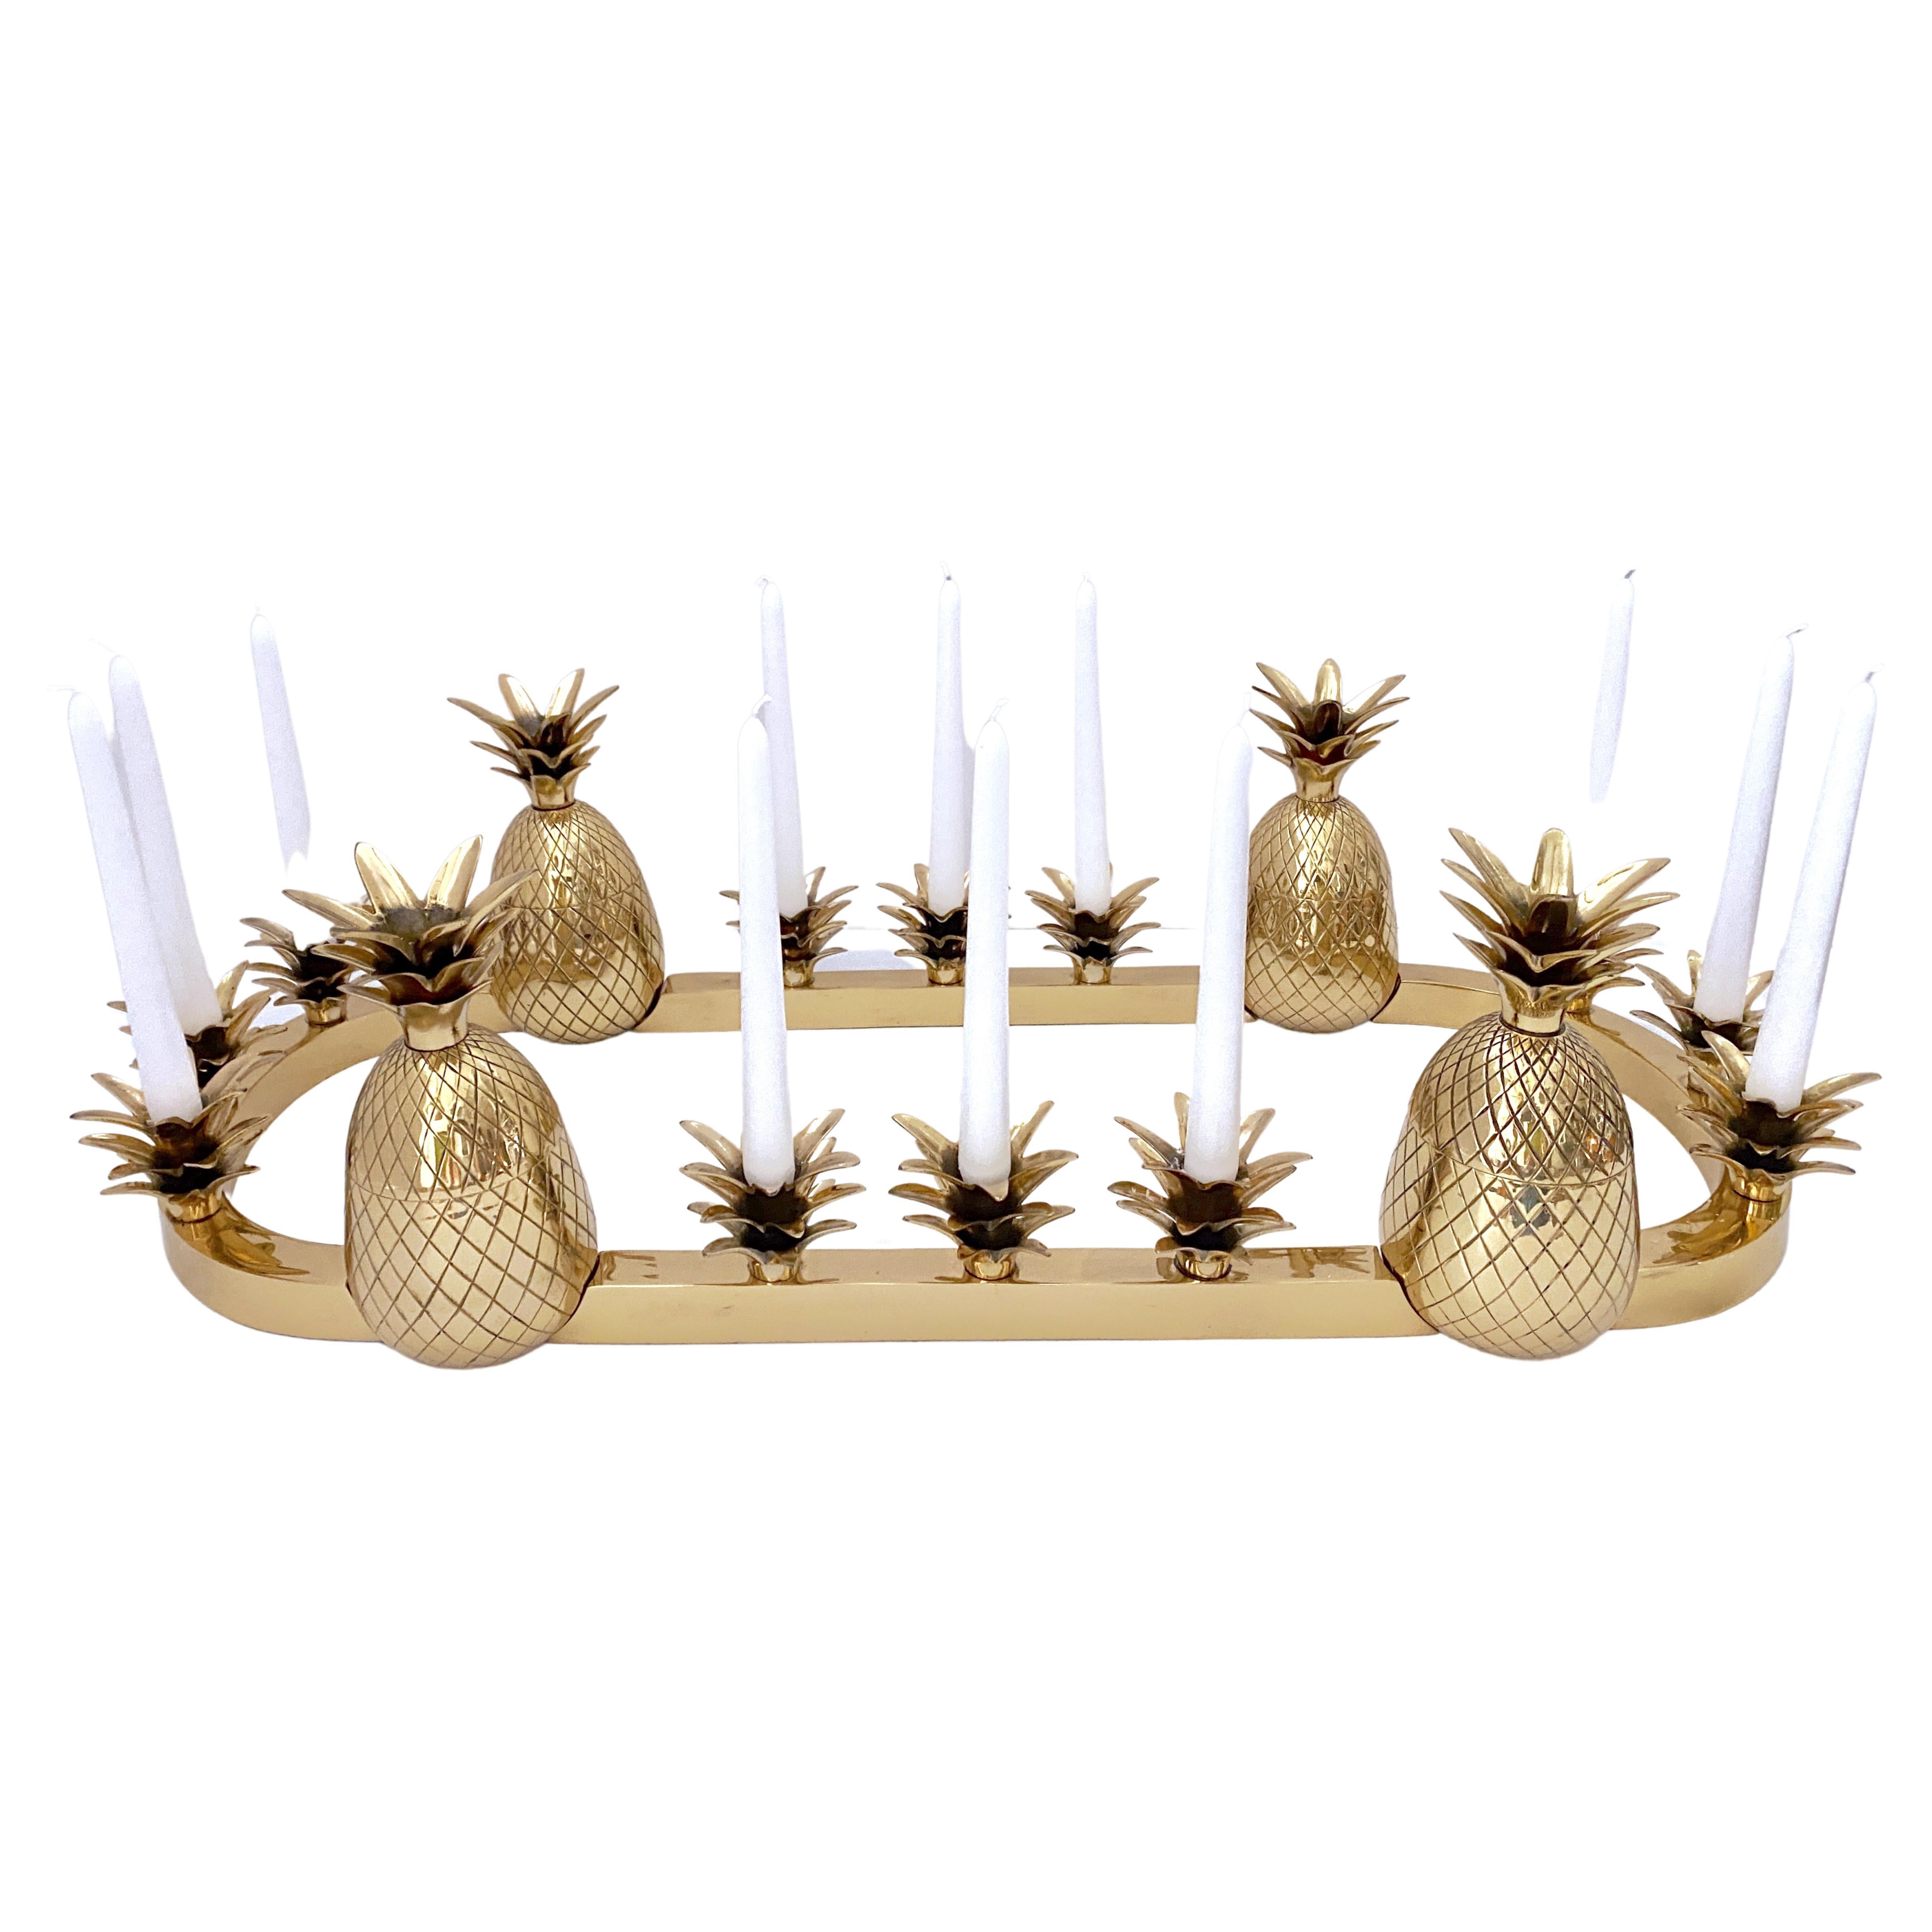 Sarreid Brass 12-Light Pineapple Candelabra Centerpiece -'Surtout de Table' For Sale